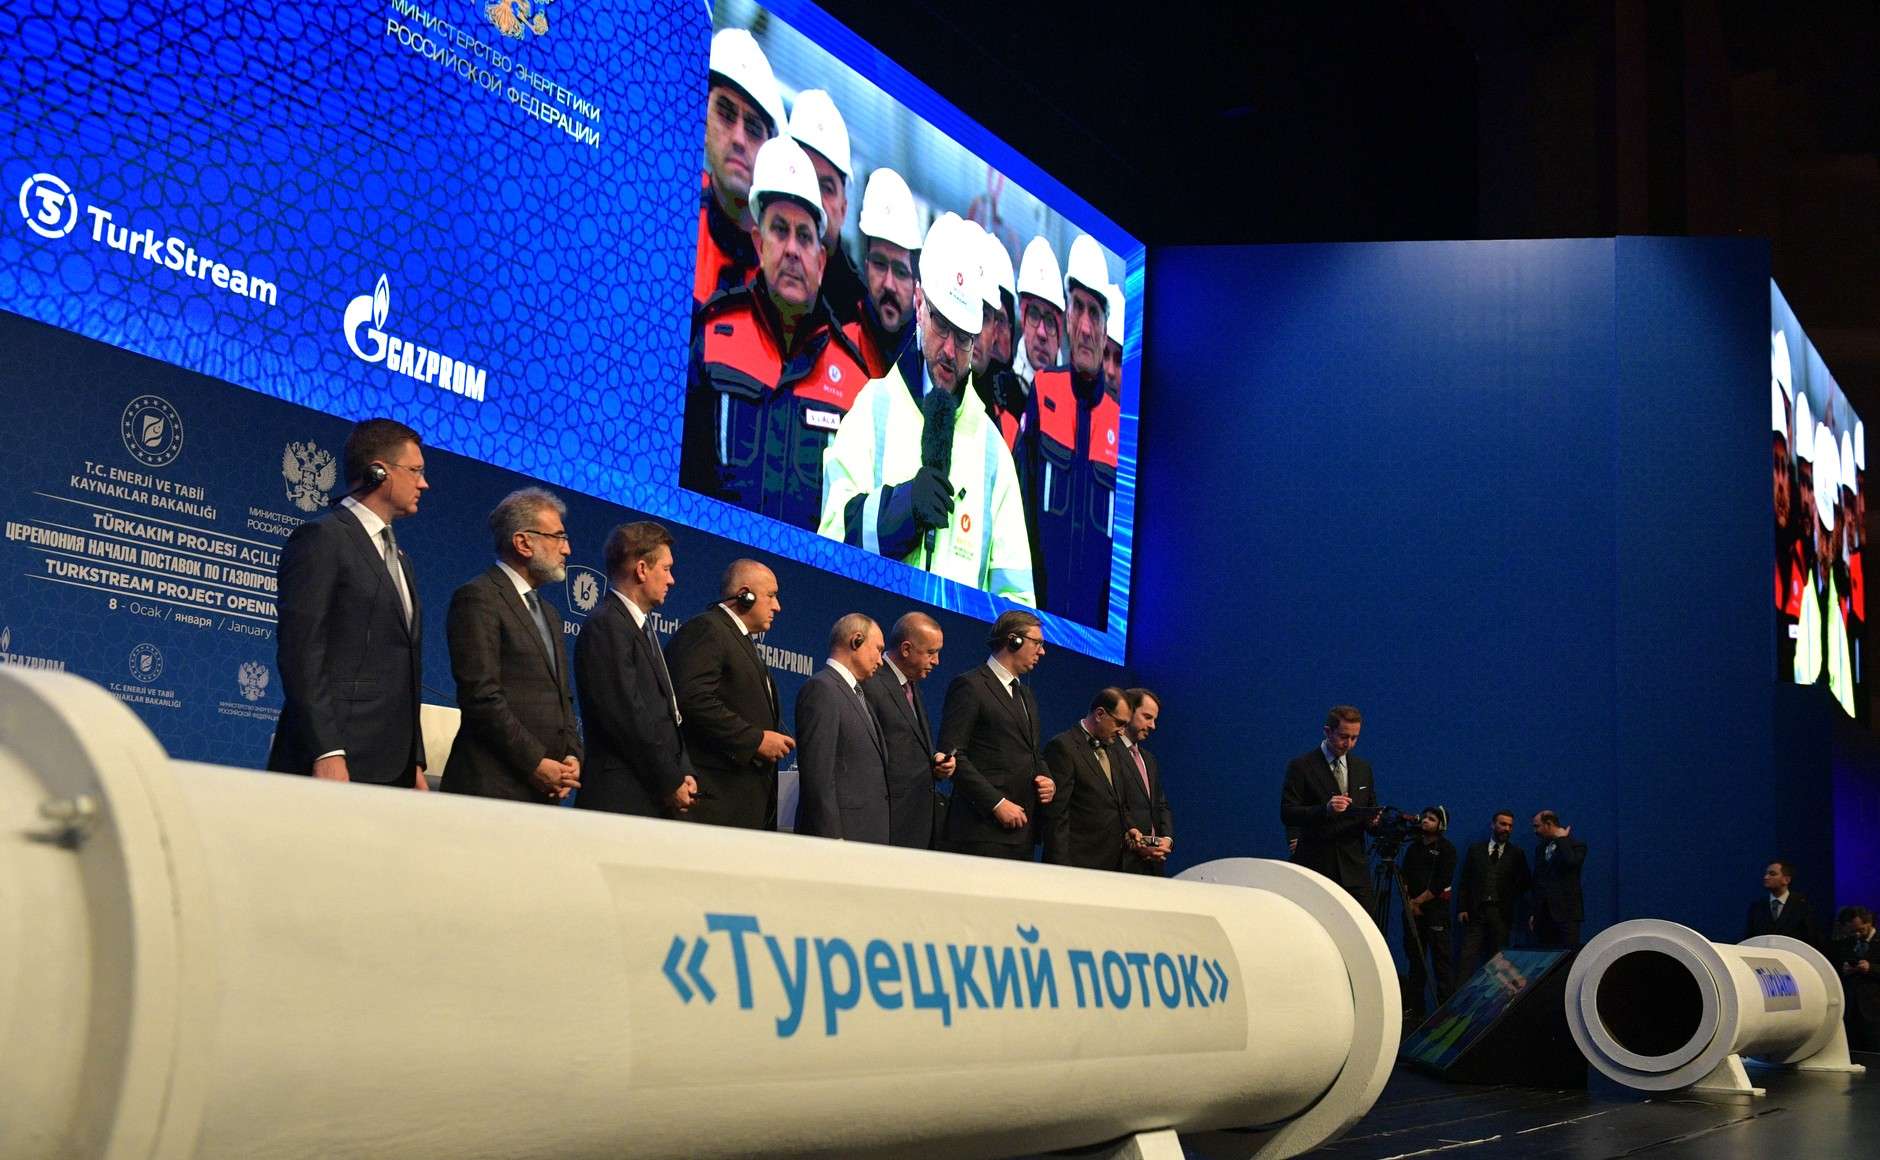 Αποκαταστάθηκε η ροή ρωσικού φυσικού αερίου προς Ελλάδα - Λειτουργεί πάλι ο TurkStream